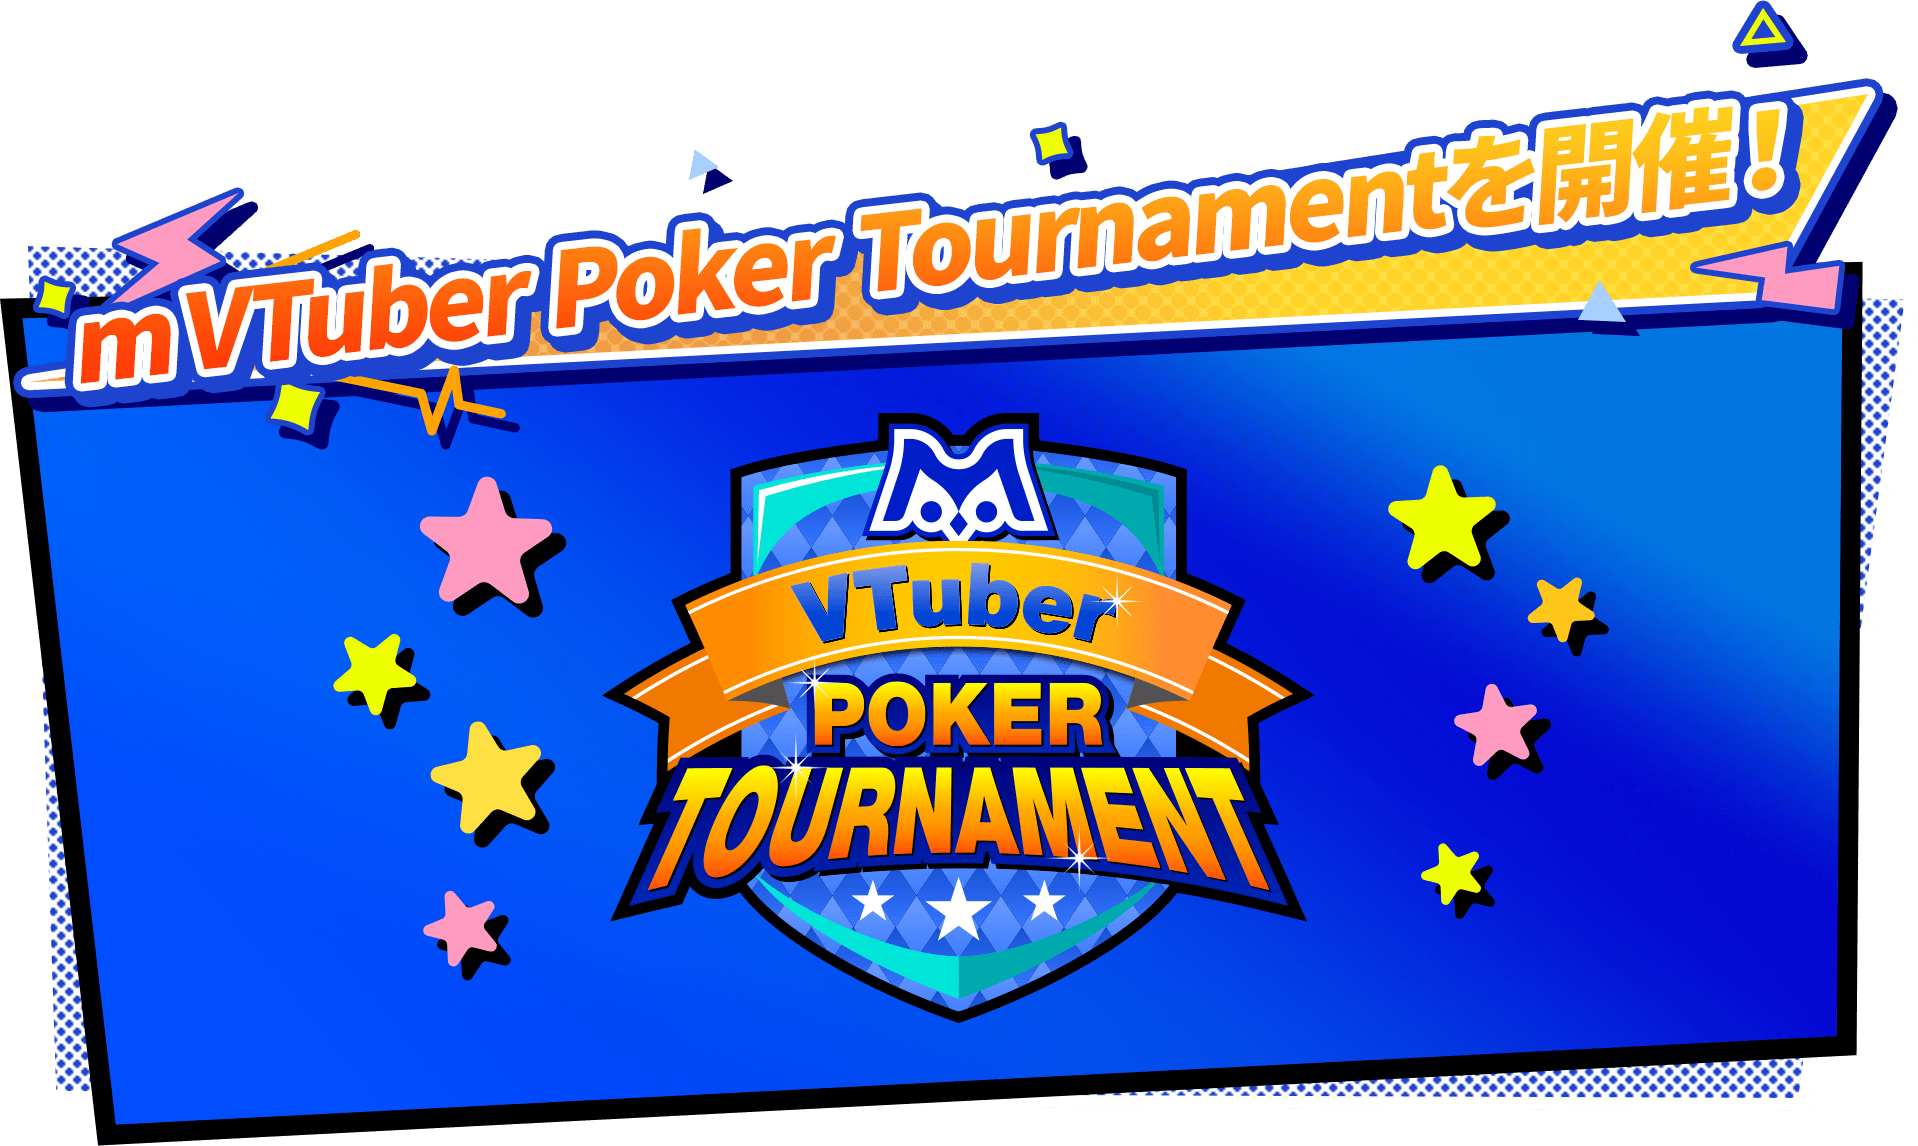 mVTuber poker tournamentを開催!